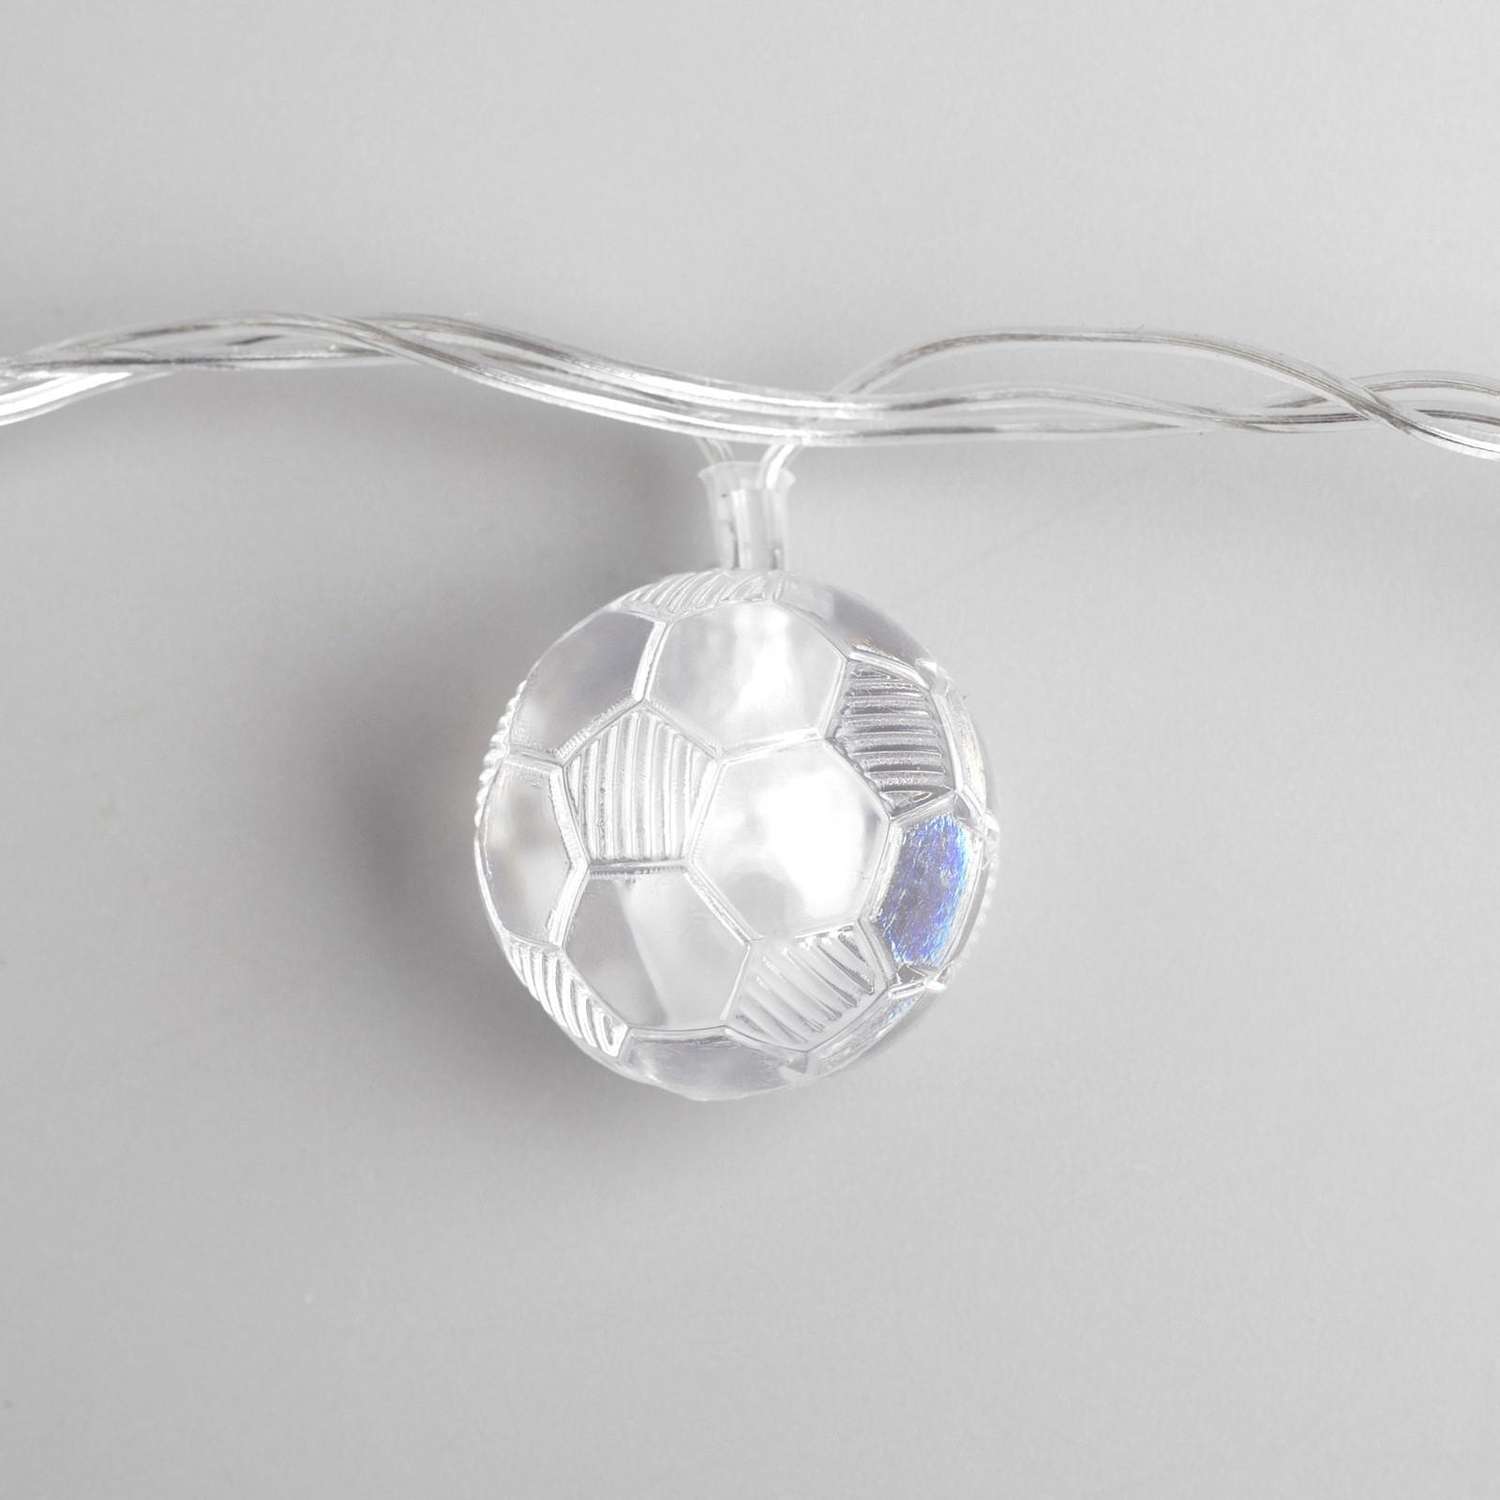 Гирлянда Luazon «Нить» «Футбольный мяч» IP20 прозрачная нить 20 LED свечение мульти RG/RB мигание 220 В - фото 1